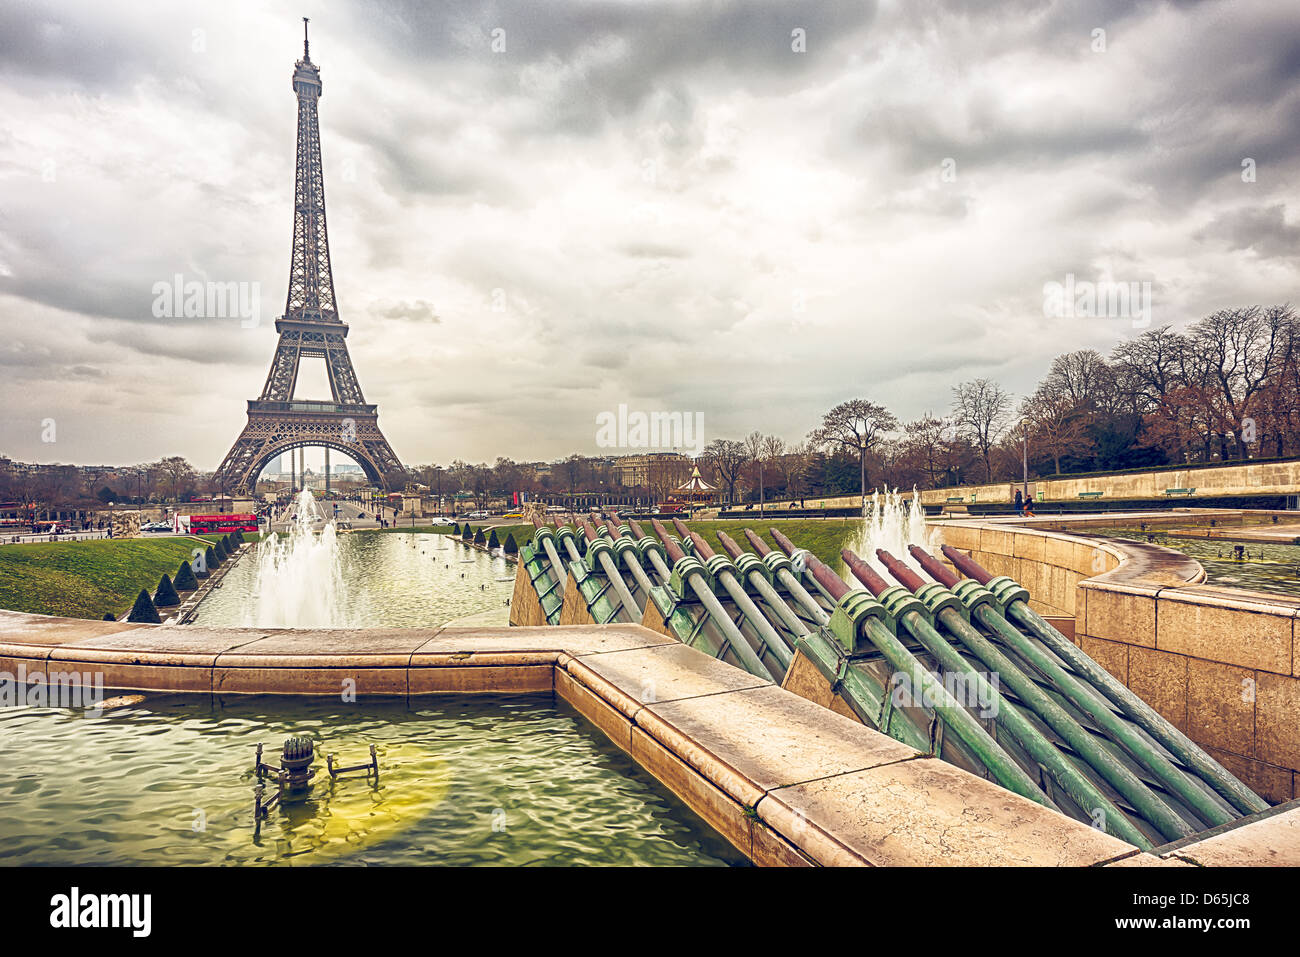 La tour Eiffel et les canons à eau sur un jour nuageux Banque D'Images